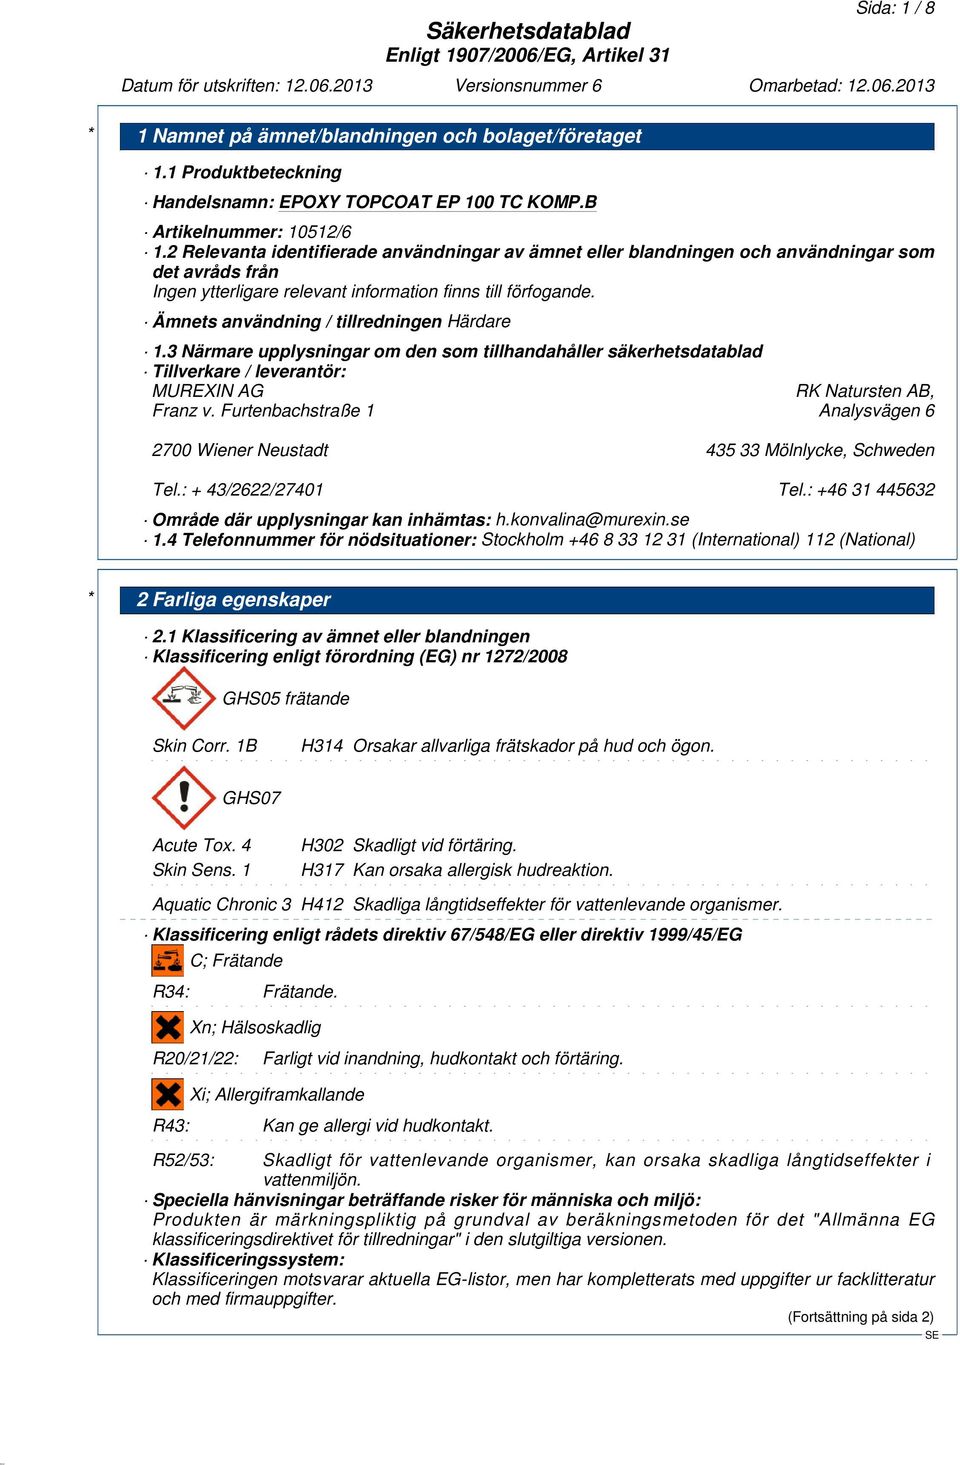 Ämnets användning / tillredningen Härdare 1.3 Närmare upplysningar om den som tillhandahåller säkerhetsdatablad Tillverkare / leverantör: MUREXIN AG RK Natursten AB, Franz v.